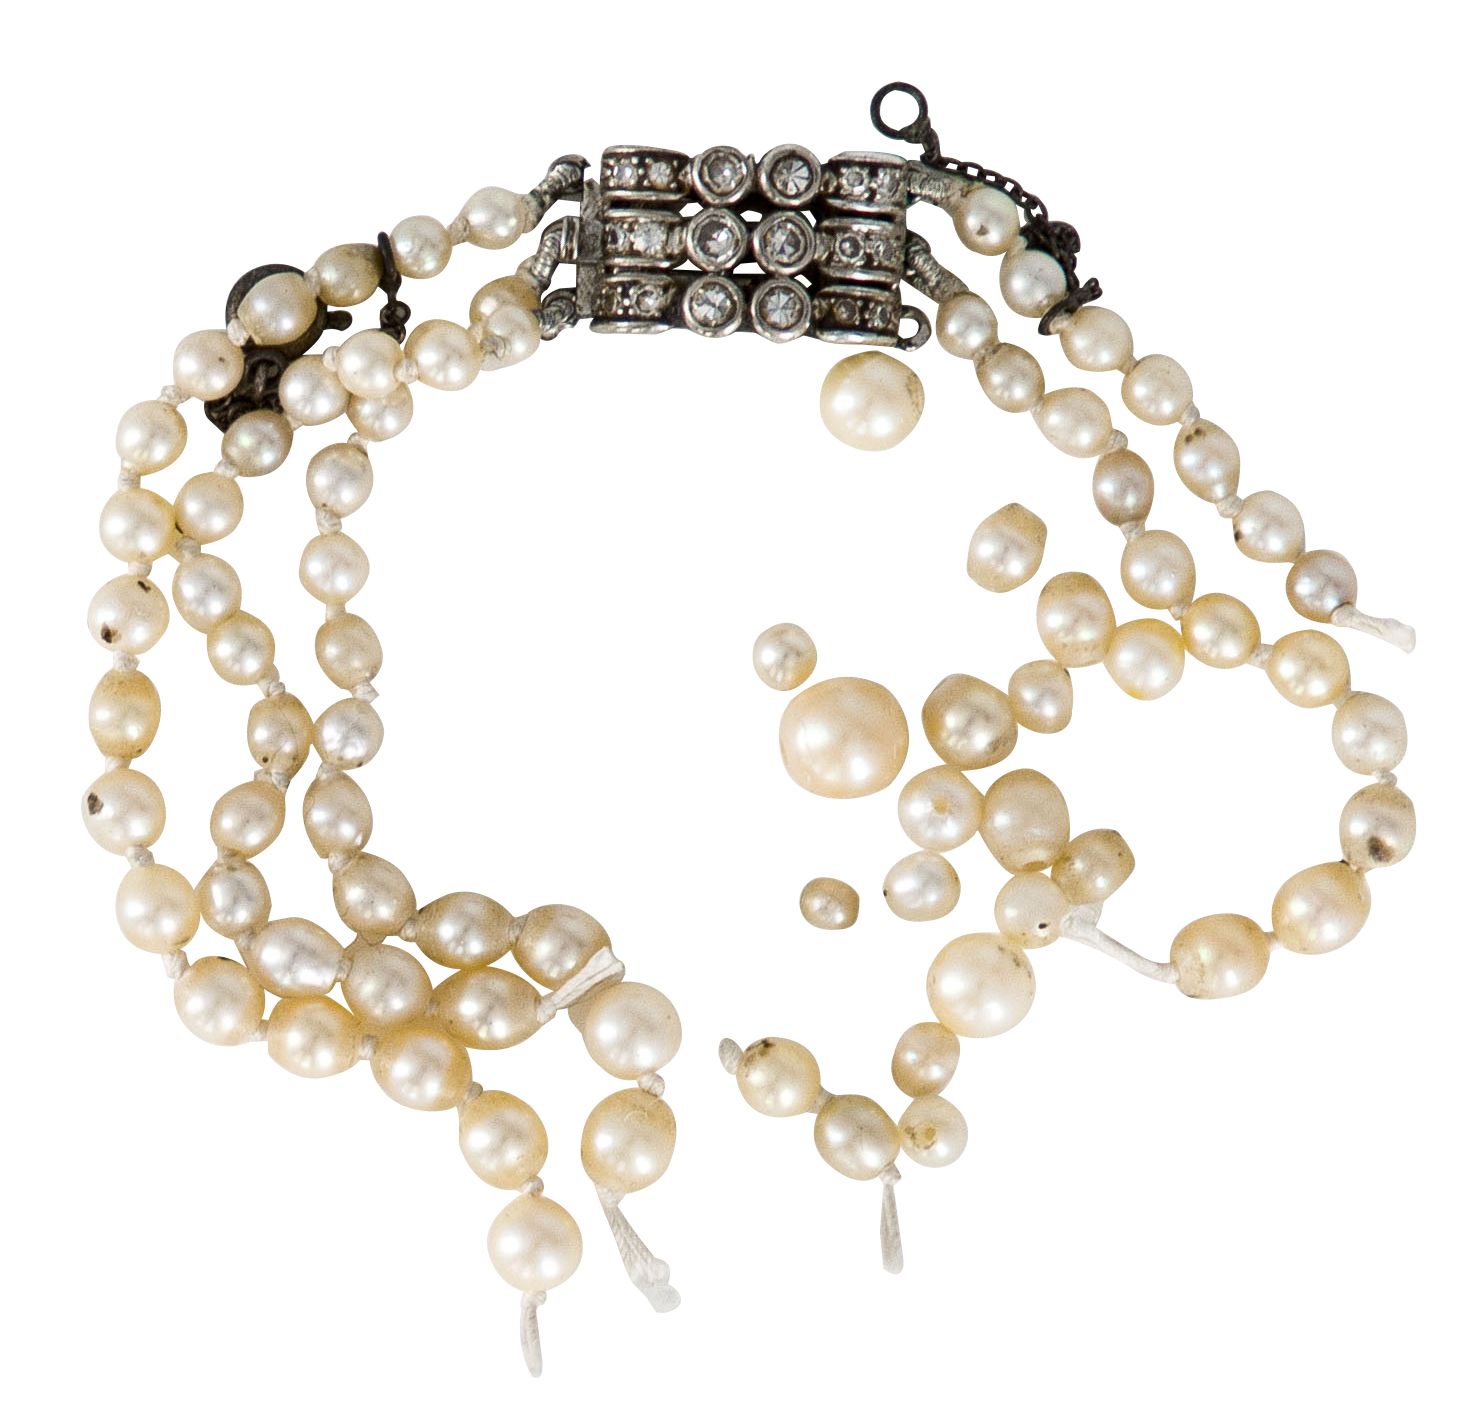 Null 18K（750）金珍珠项链扣，镶嵌8/8圆钻。尺寸：1.5 x 1厘米左右。毛重：9克（冲击，碎片，珍珠附着）。